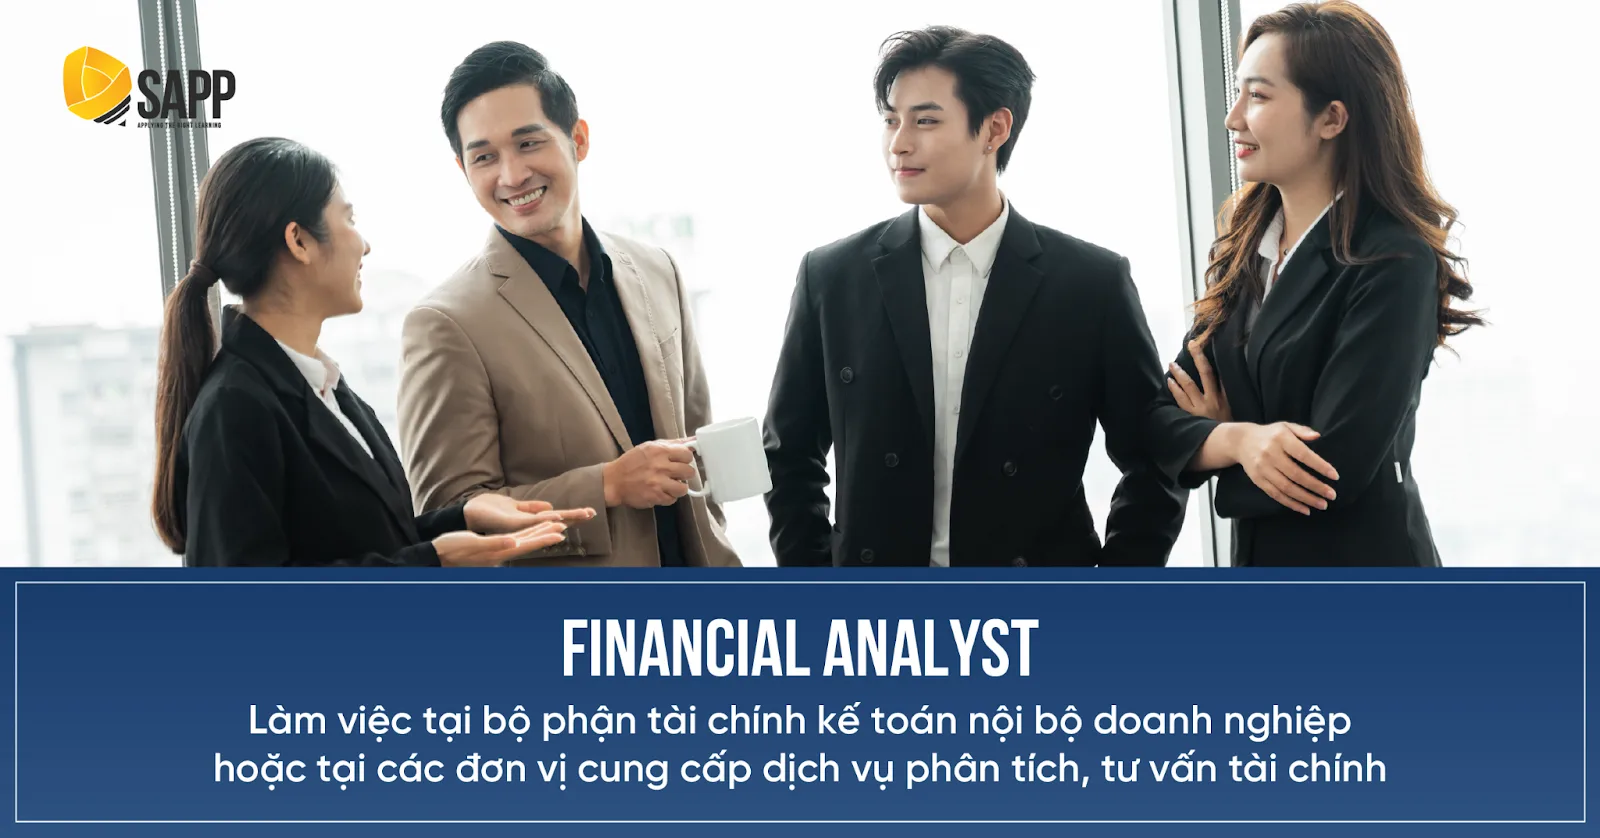 Financial Analyst làm việc tại bộ phận tài chính kế toán nội bộ doanh nghiệp